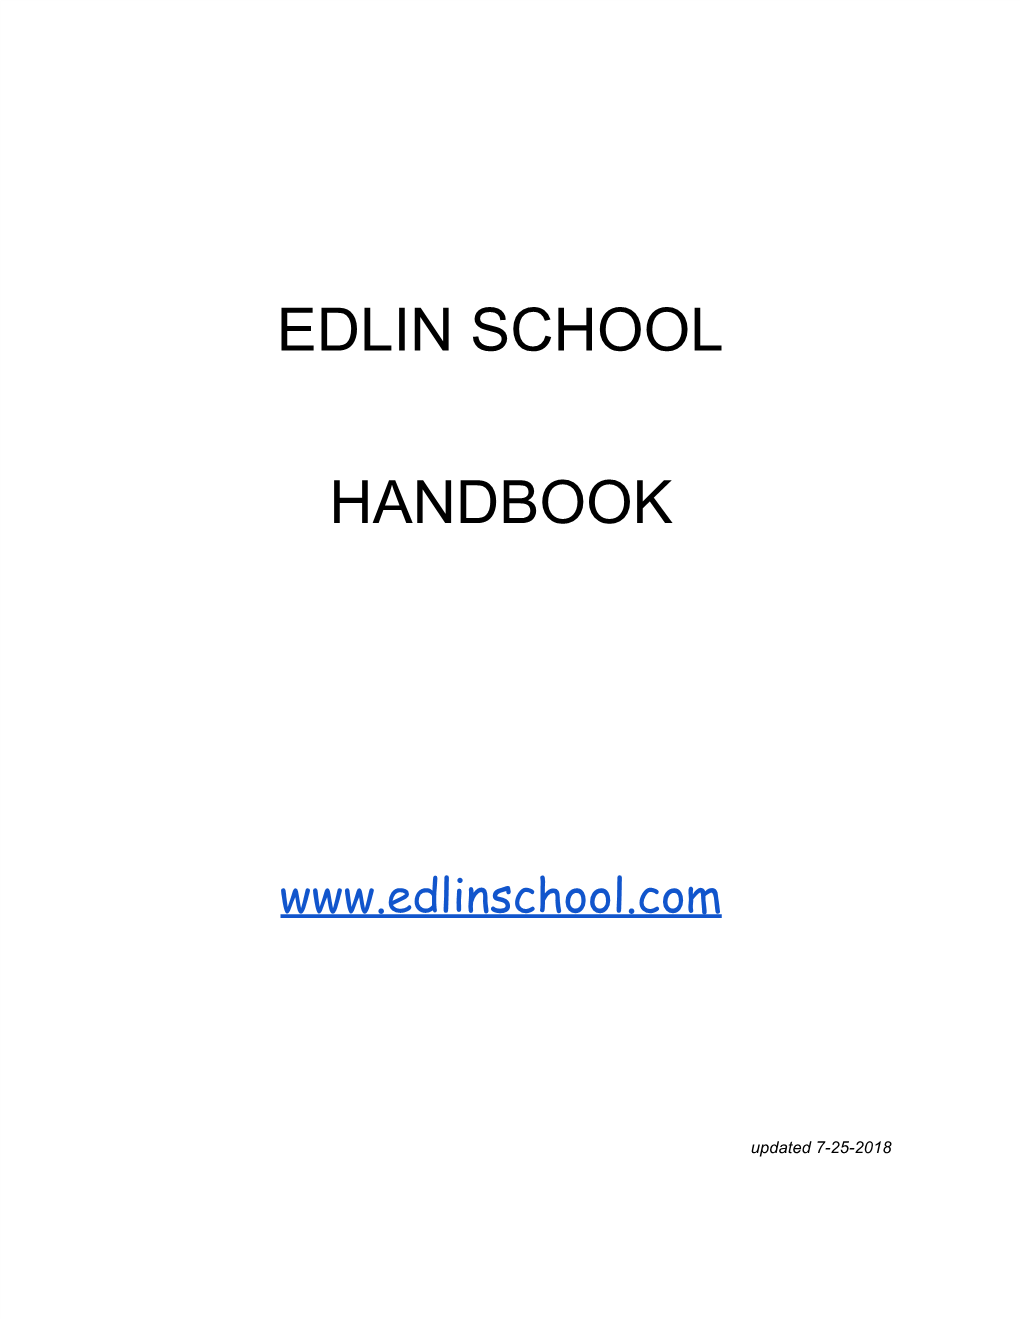 Edlin School Handbook